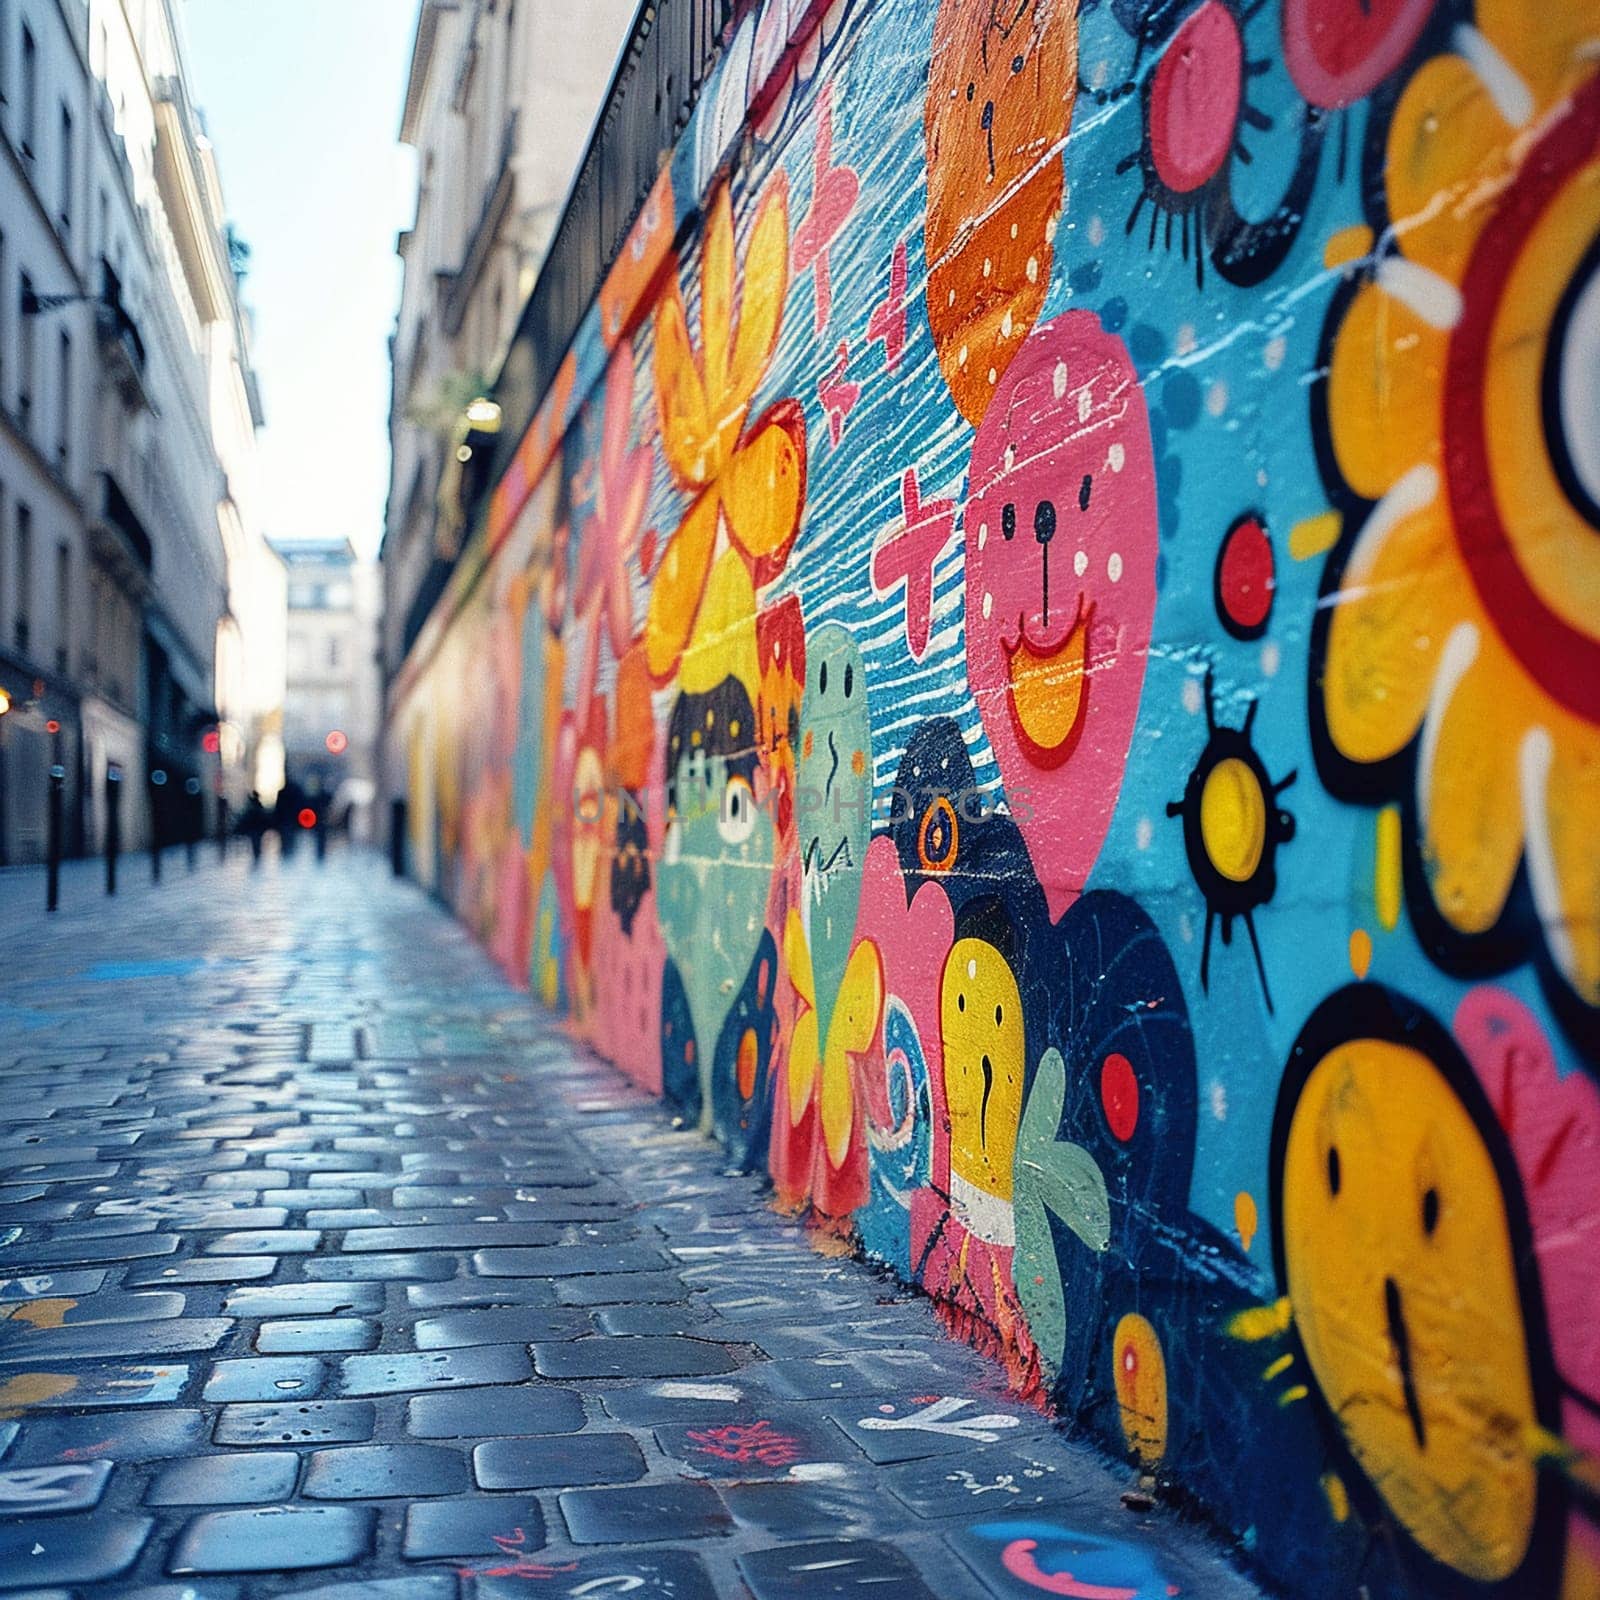 Vibrant graffiti wall in urban setting by Benzoix